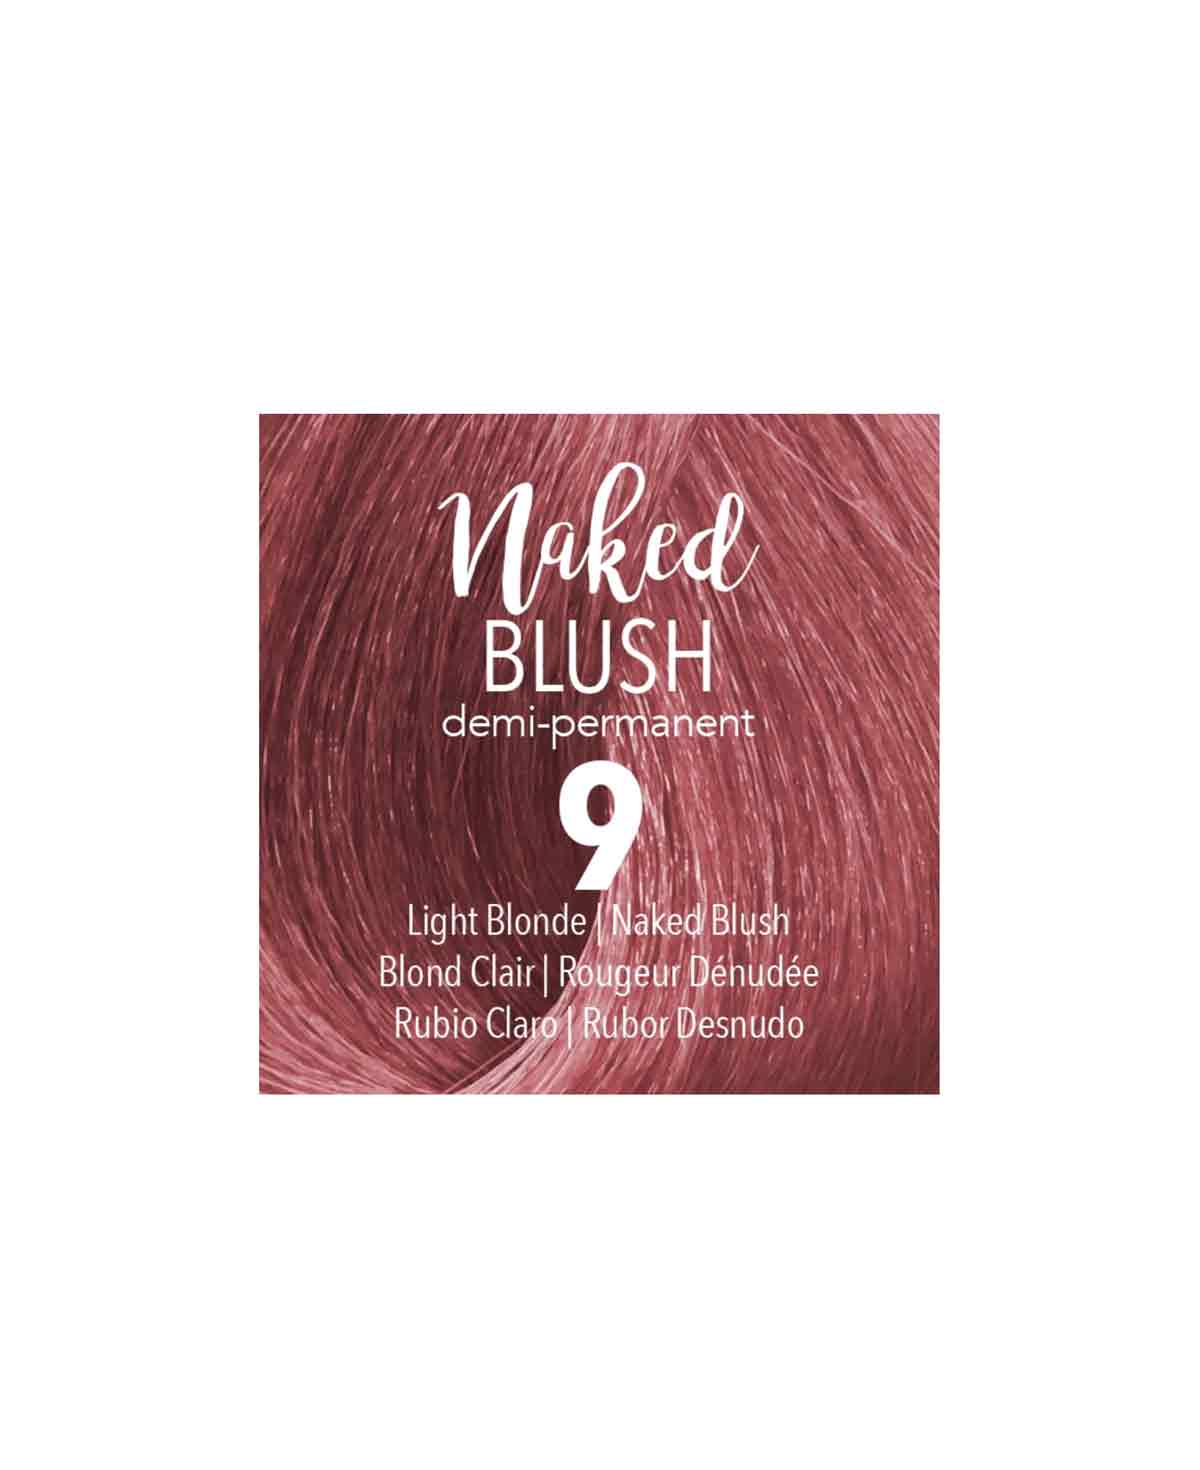 Mydentity - DEMI 9 Light Blonde Naked Blush